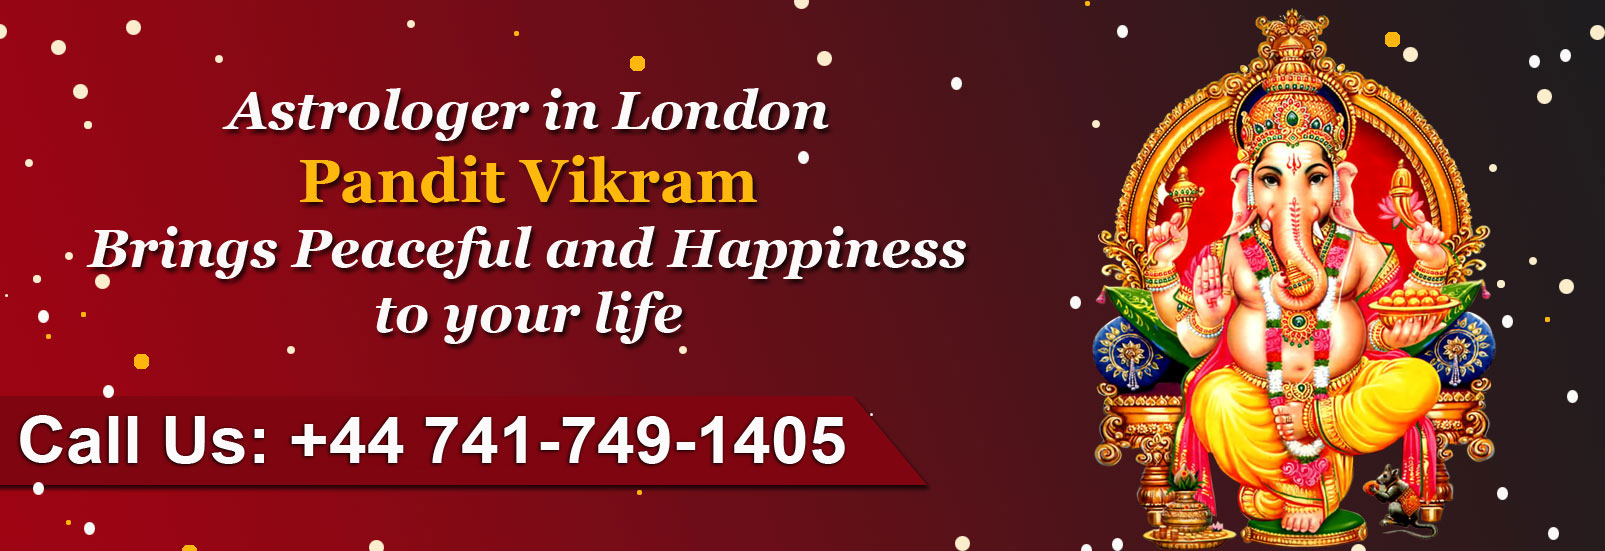 Pandit Vikram Astrology Services Banner